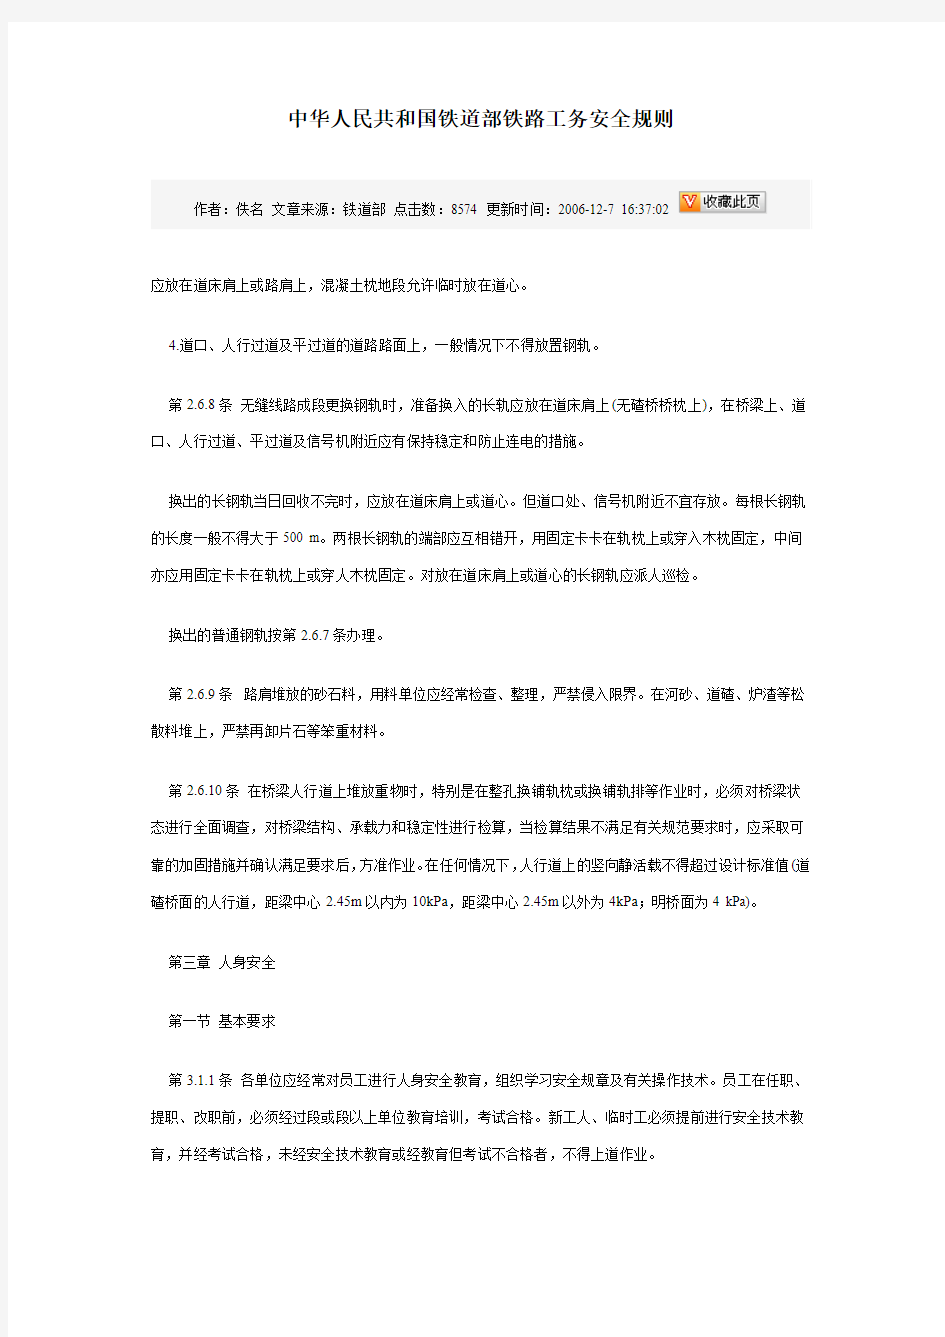 中华人民共和国铁道部铁路工务安全规则 (2)